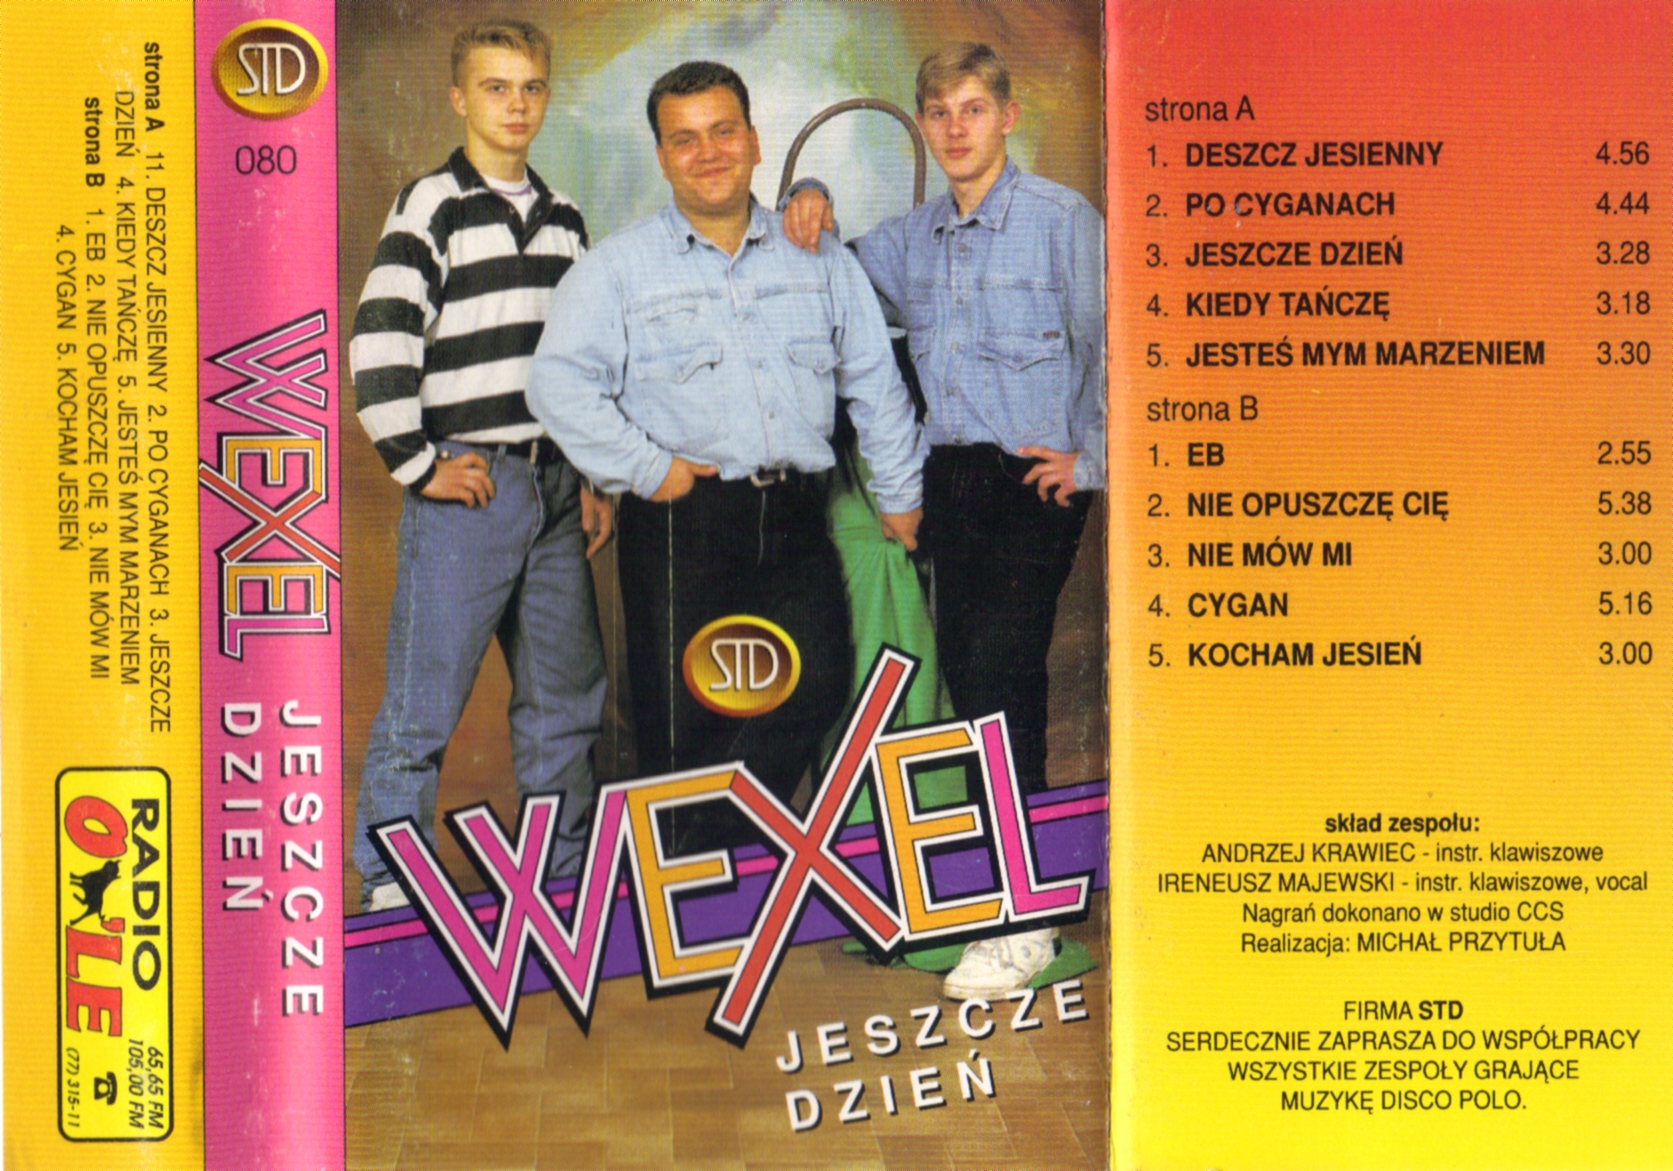 Wexel - Jeszcze Dzień - 2012-11-20 204149.JPG